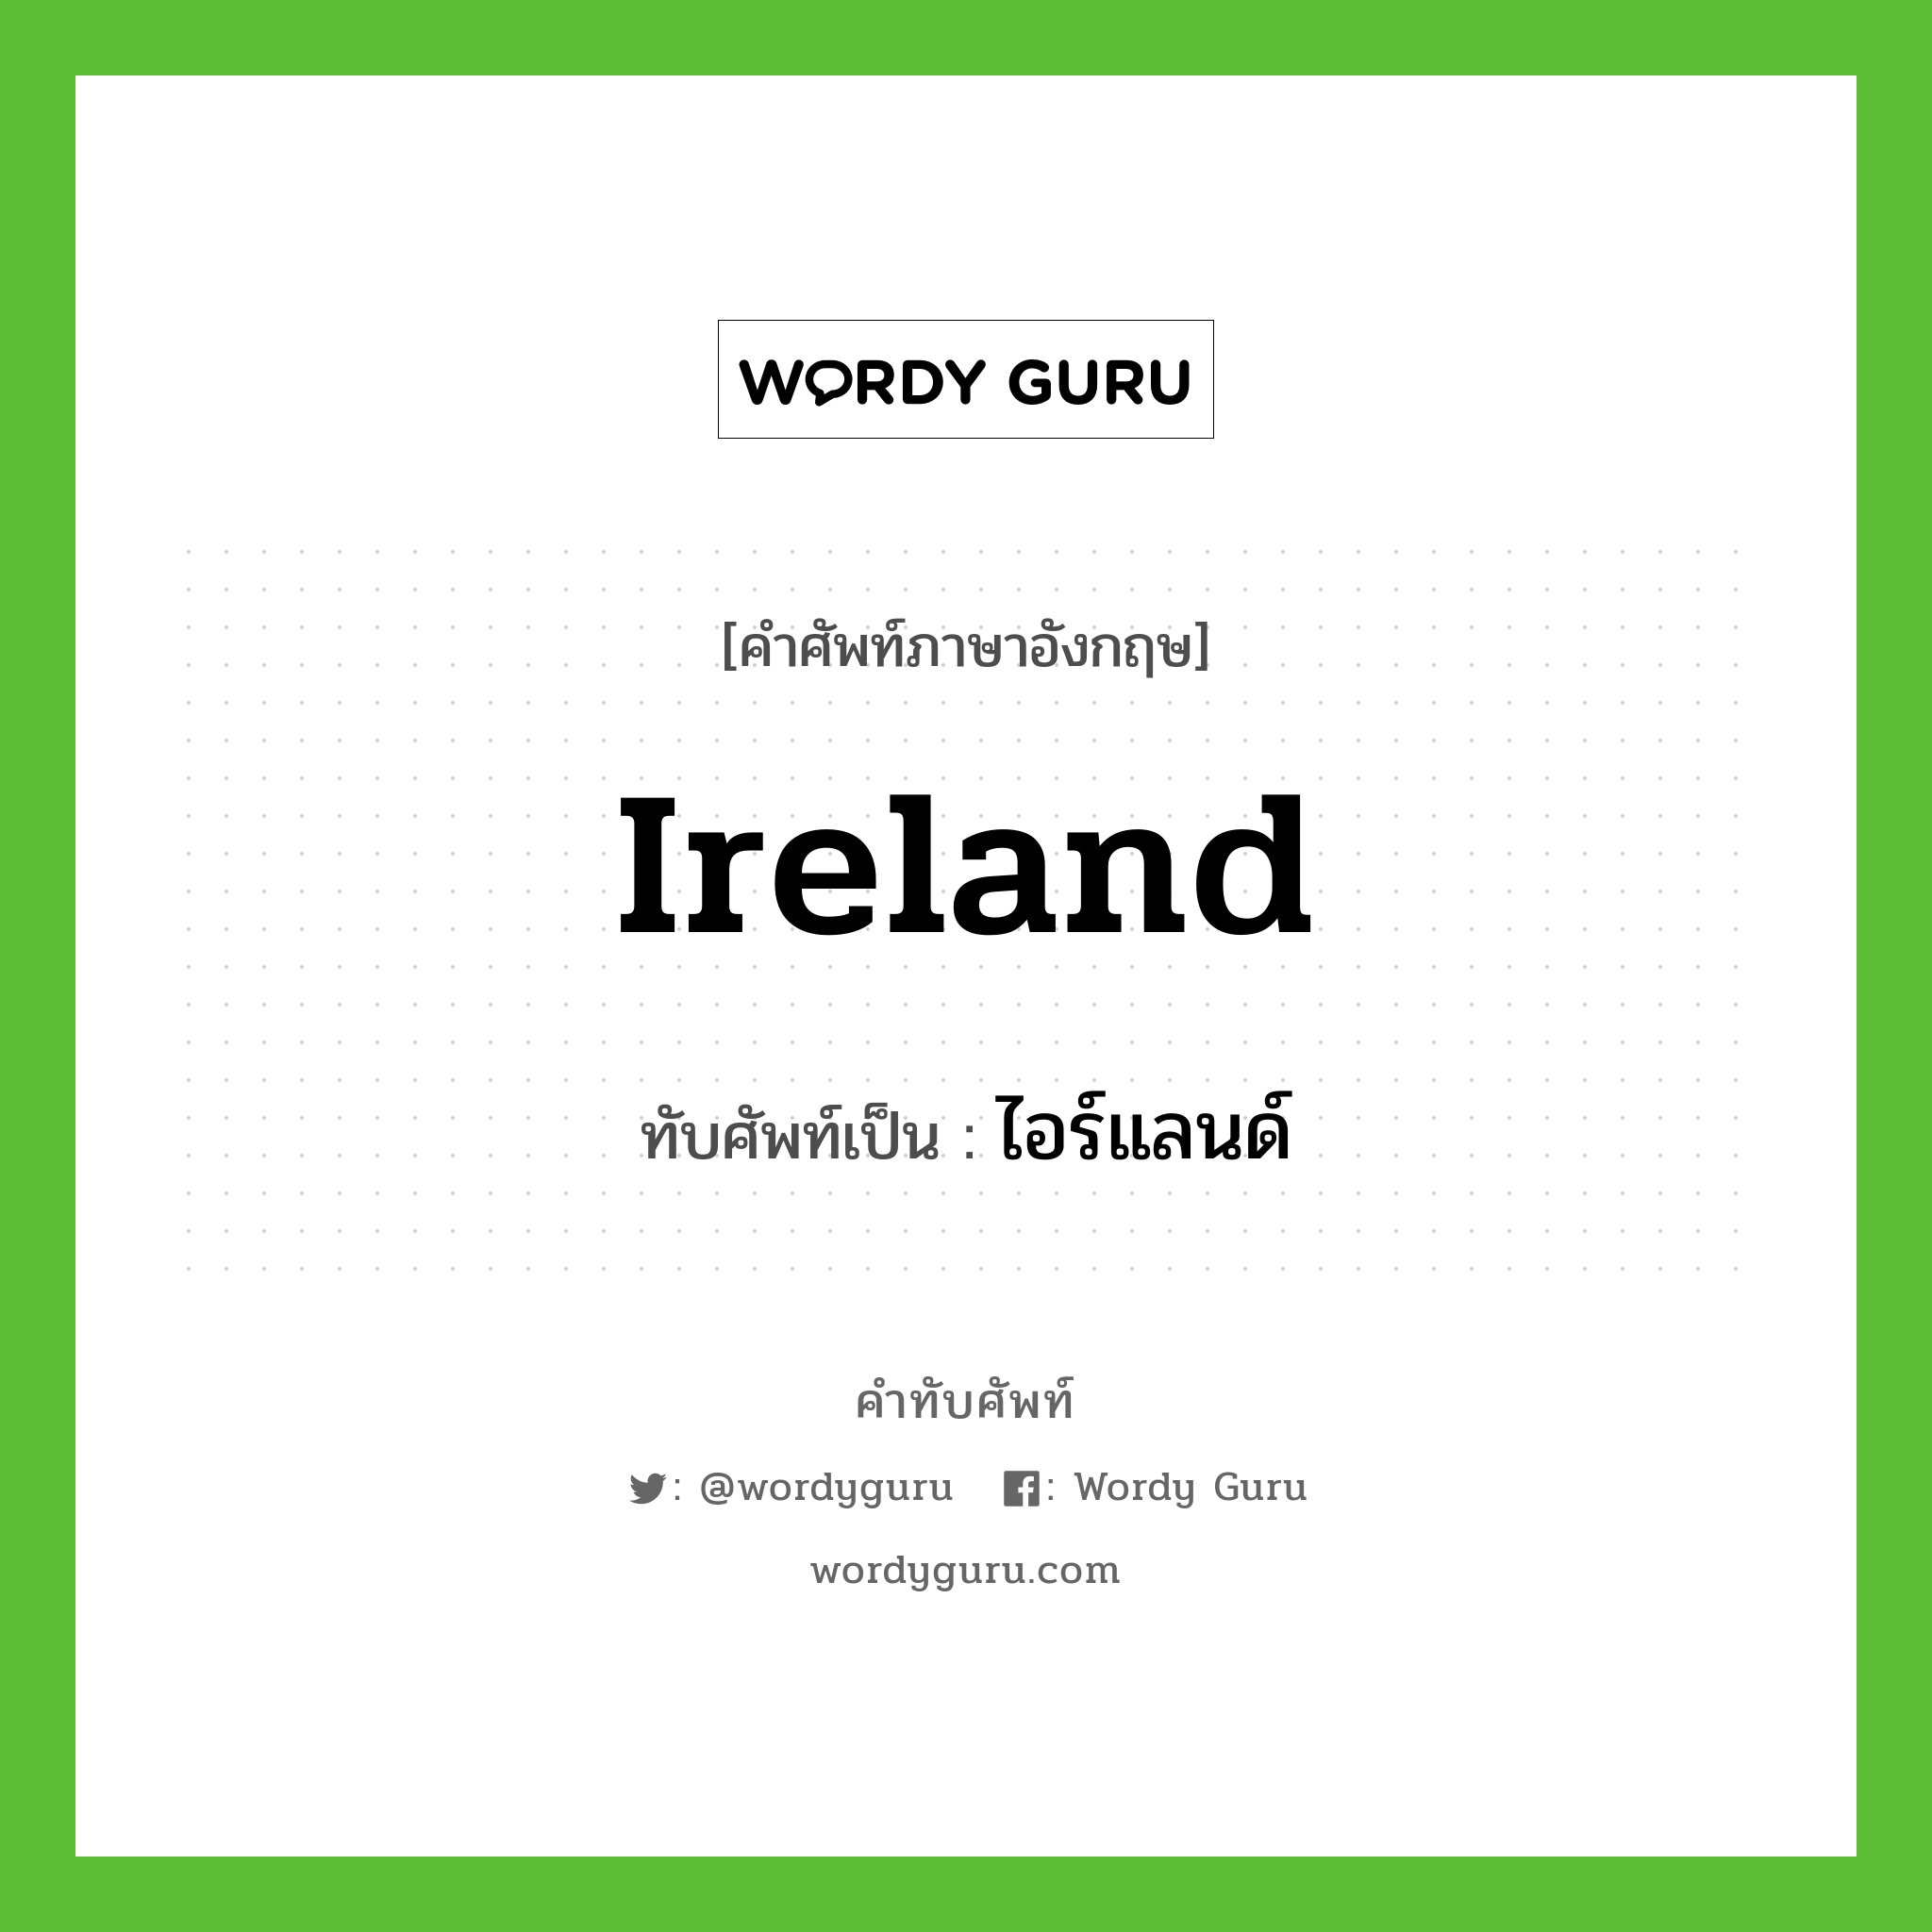 ไอร์แลนด์ เขียนอย่างไร?, คำศัพท์ภาษาอังกฤษ ไอร์แลนด์ ทับศัพท์เป็น Ireland